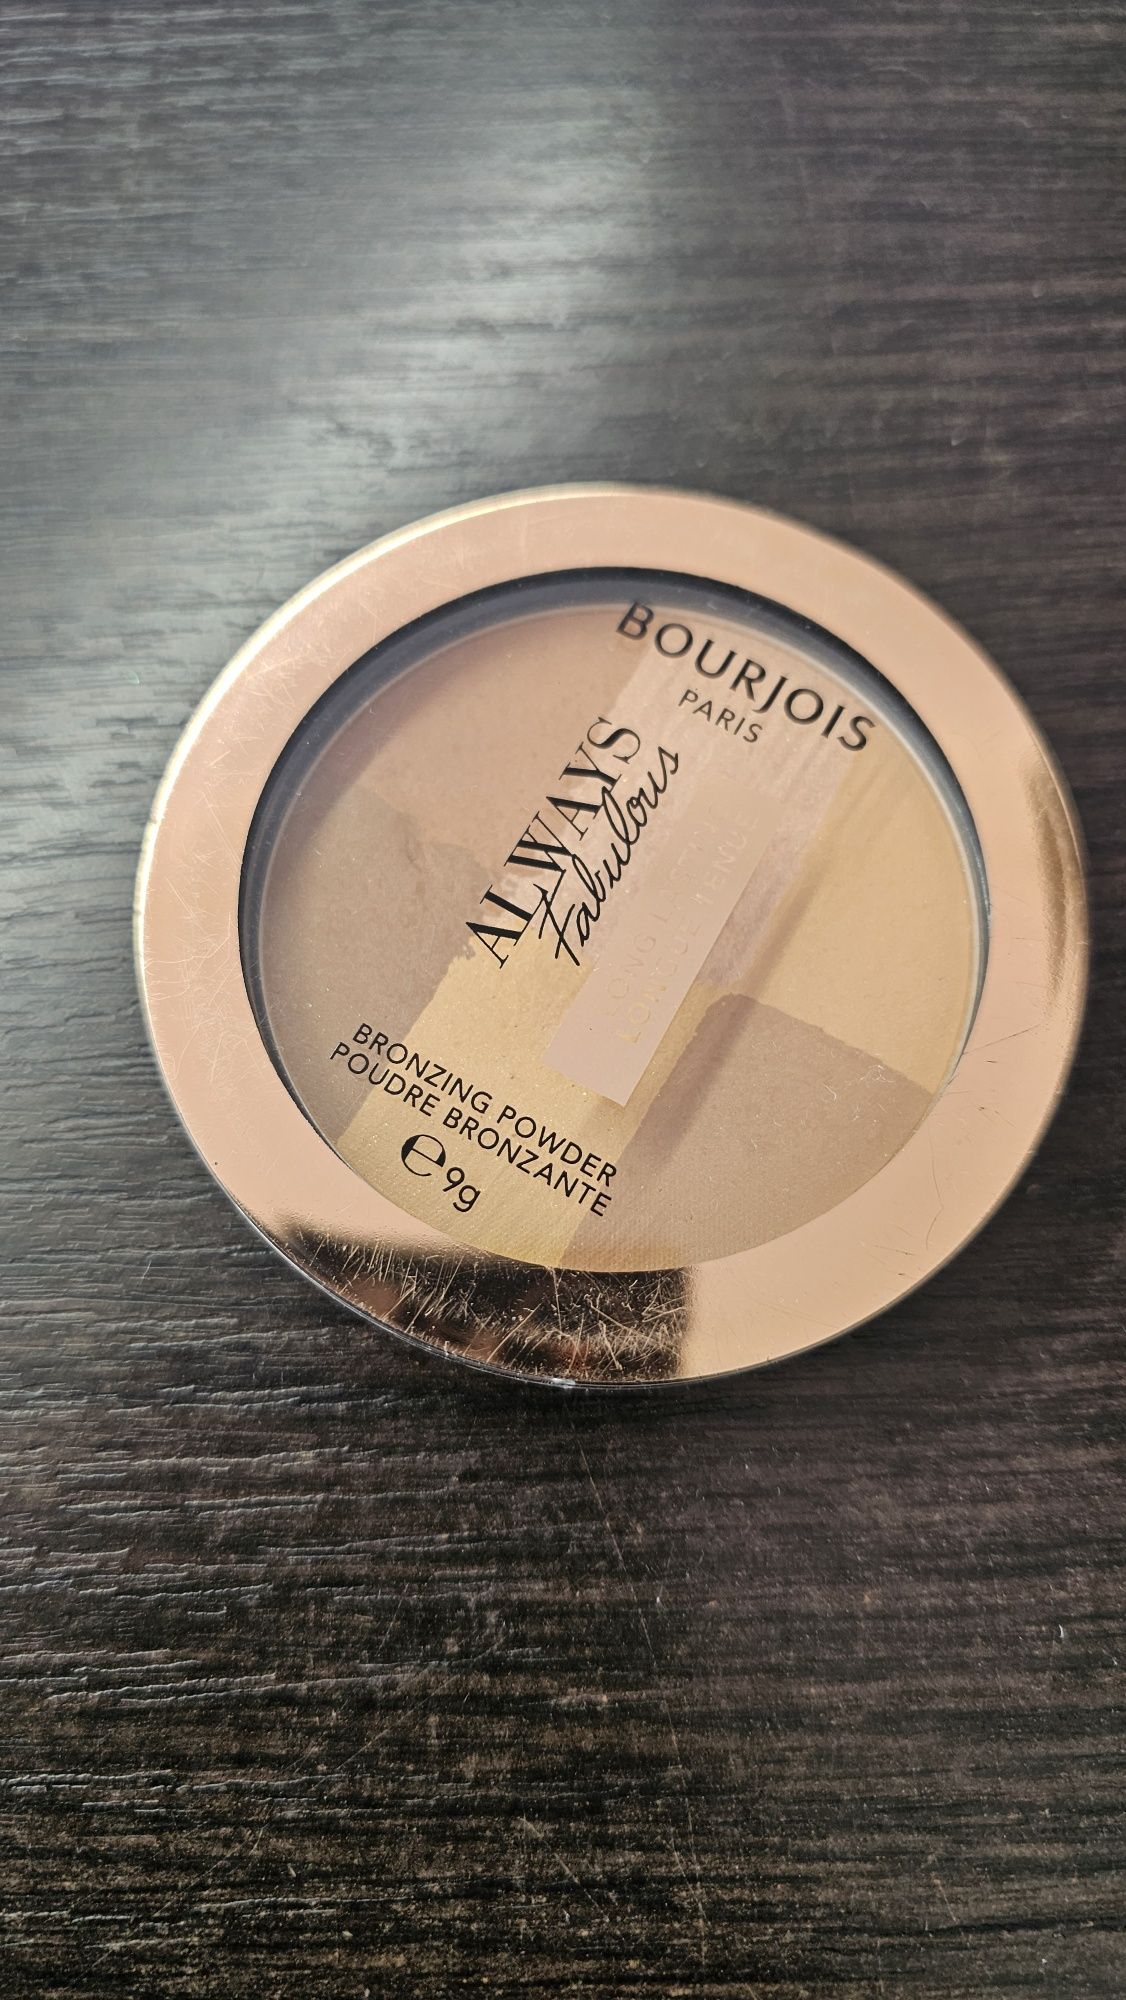 Bourjois, Always Fabolous - Bronzing Powder, 001 Medium. Bronzer